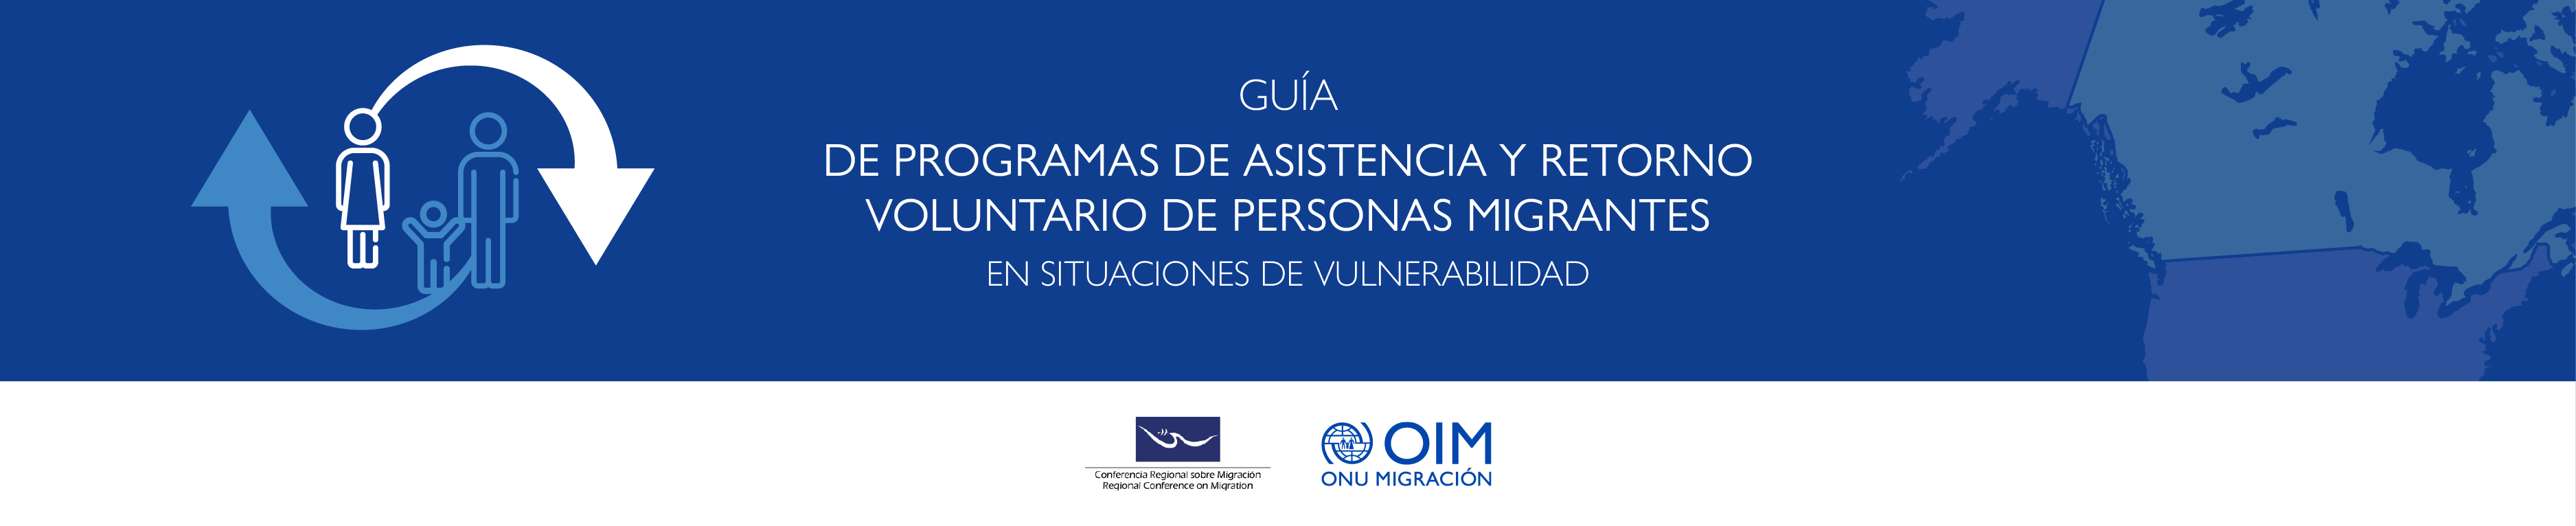 Guía de programas de asistencia y retorno voluntario de personas migrantes en situaciones de vulnerabilidad